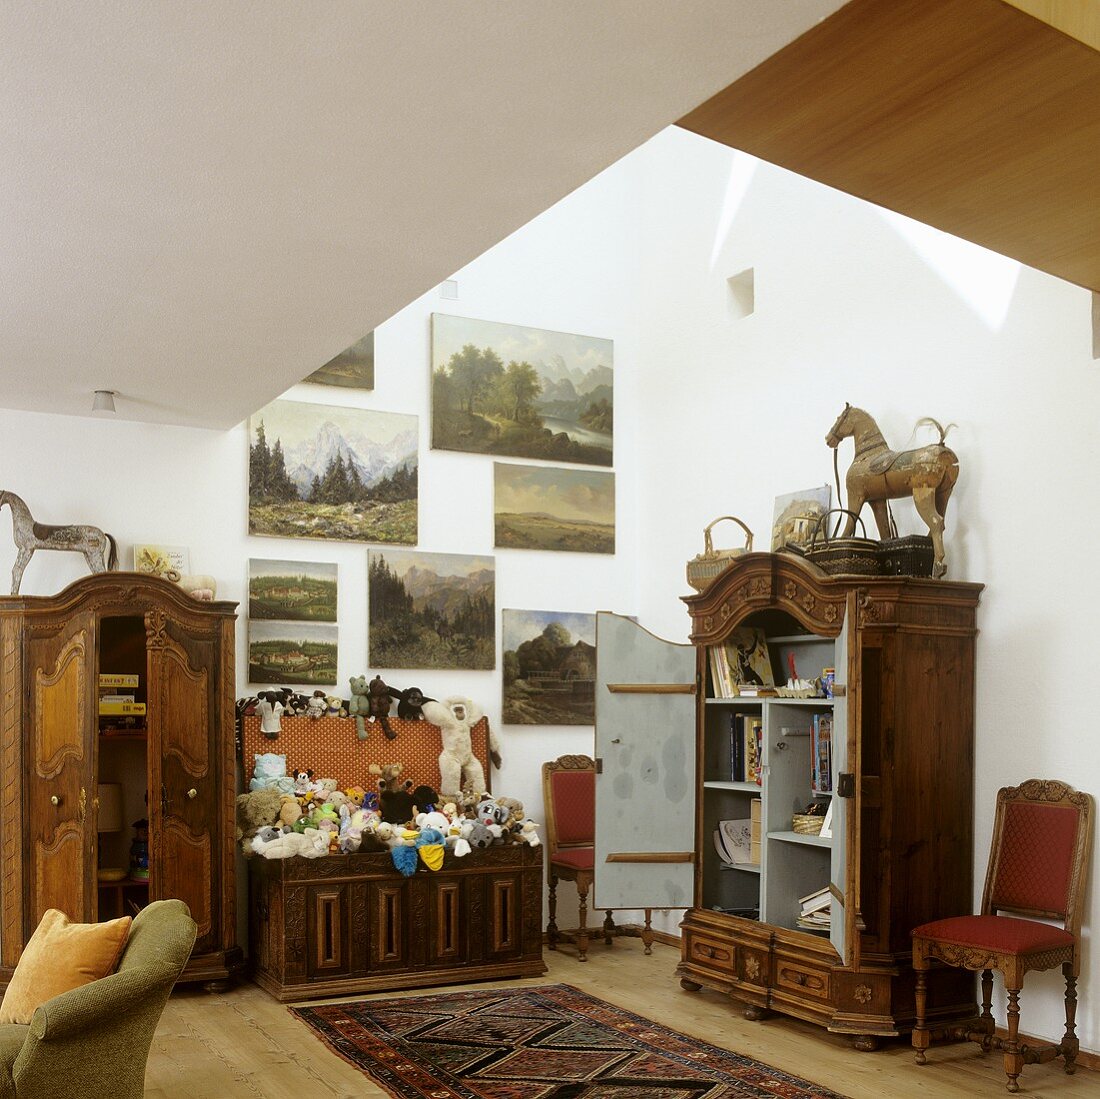 Sammlung antiker Möbel und Gemälde im Luftraum des Hauses